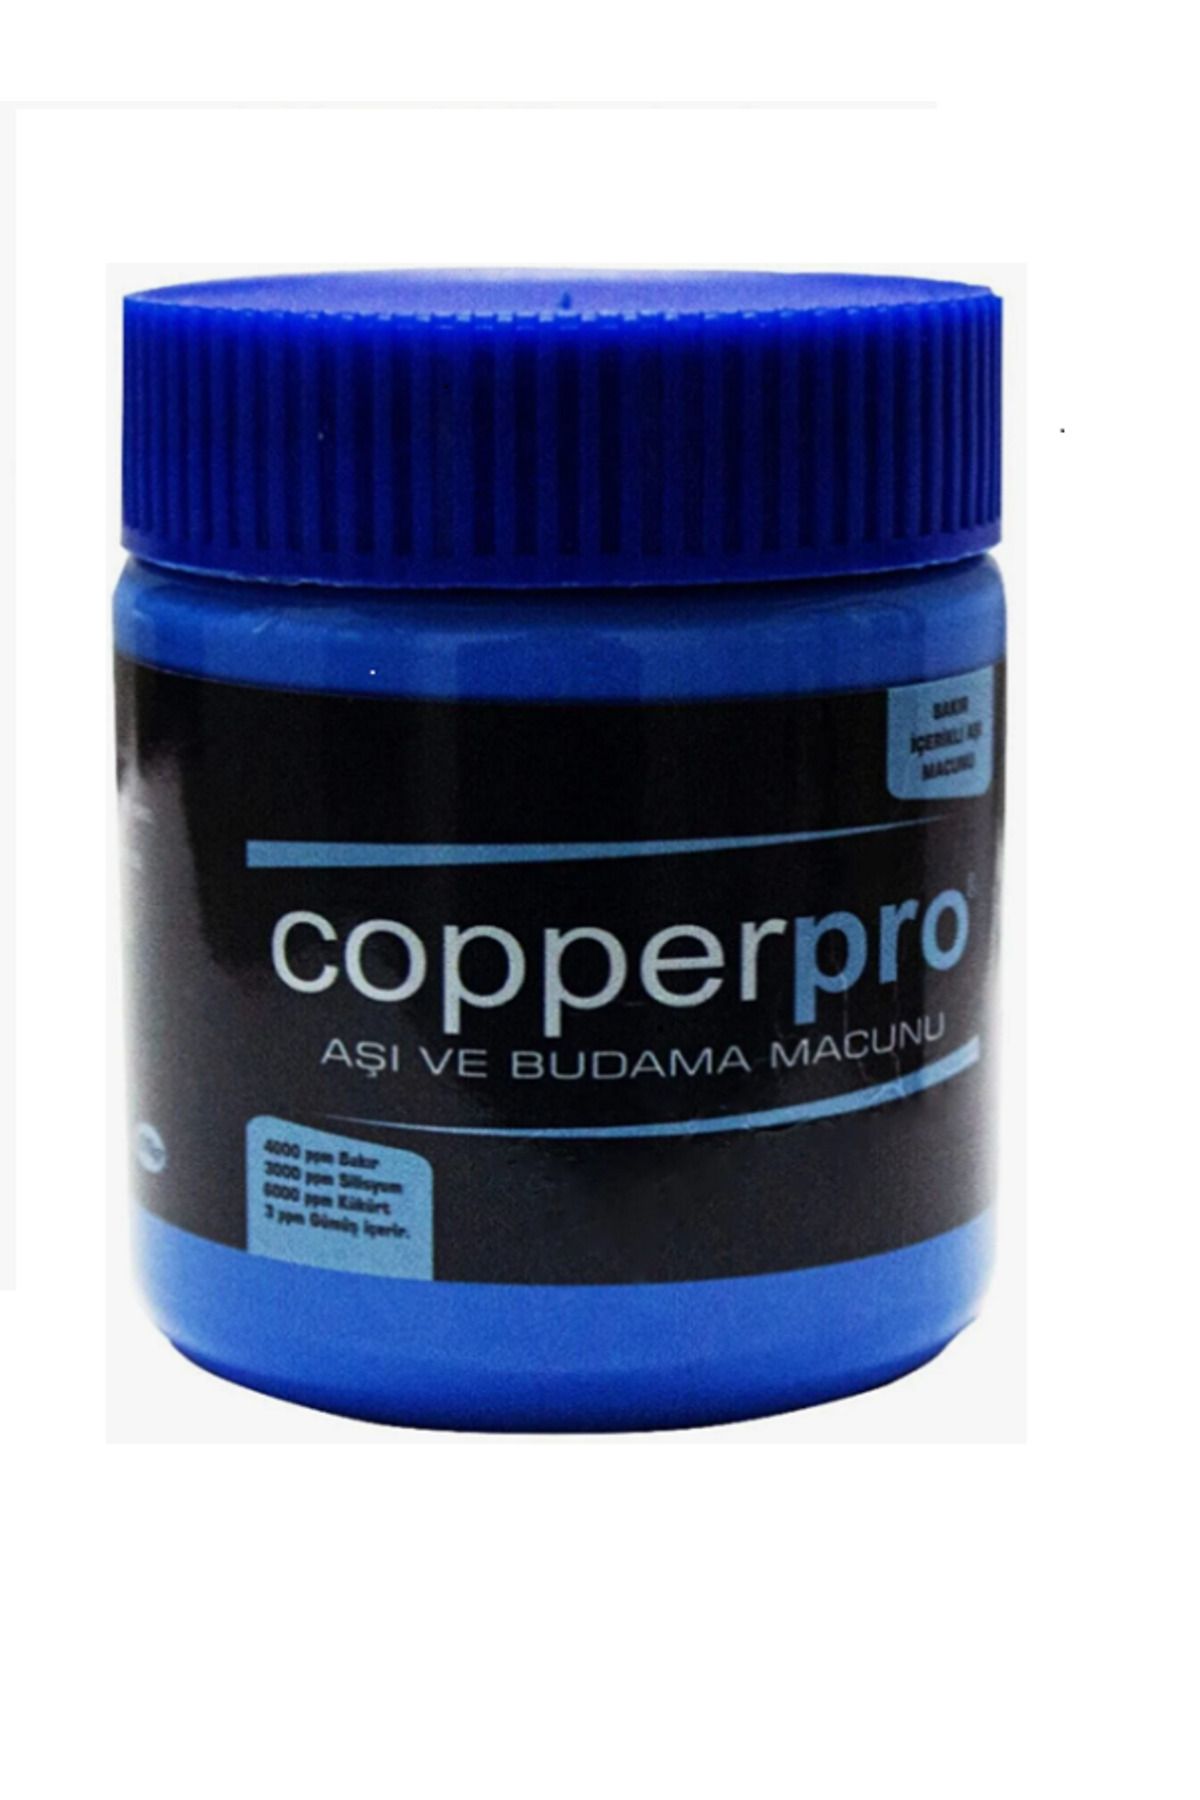 COPPERPRO Bakır İçerikli Aşı Ve Budama Macunu 250 gr